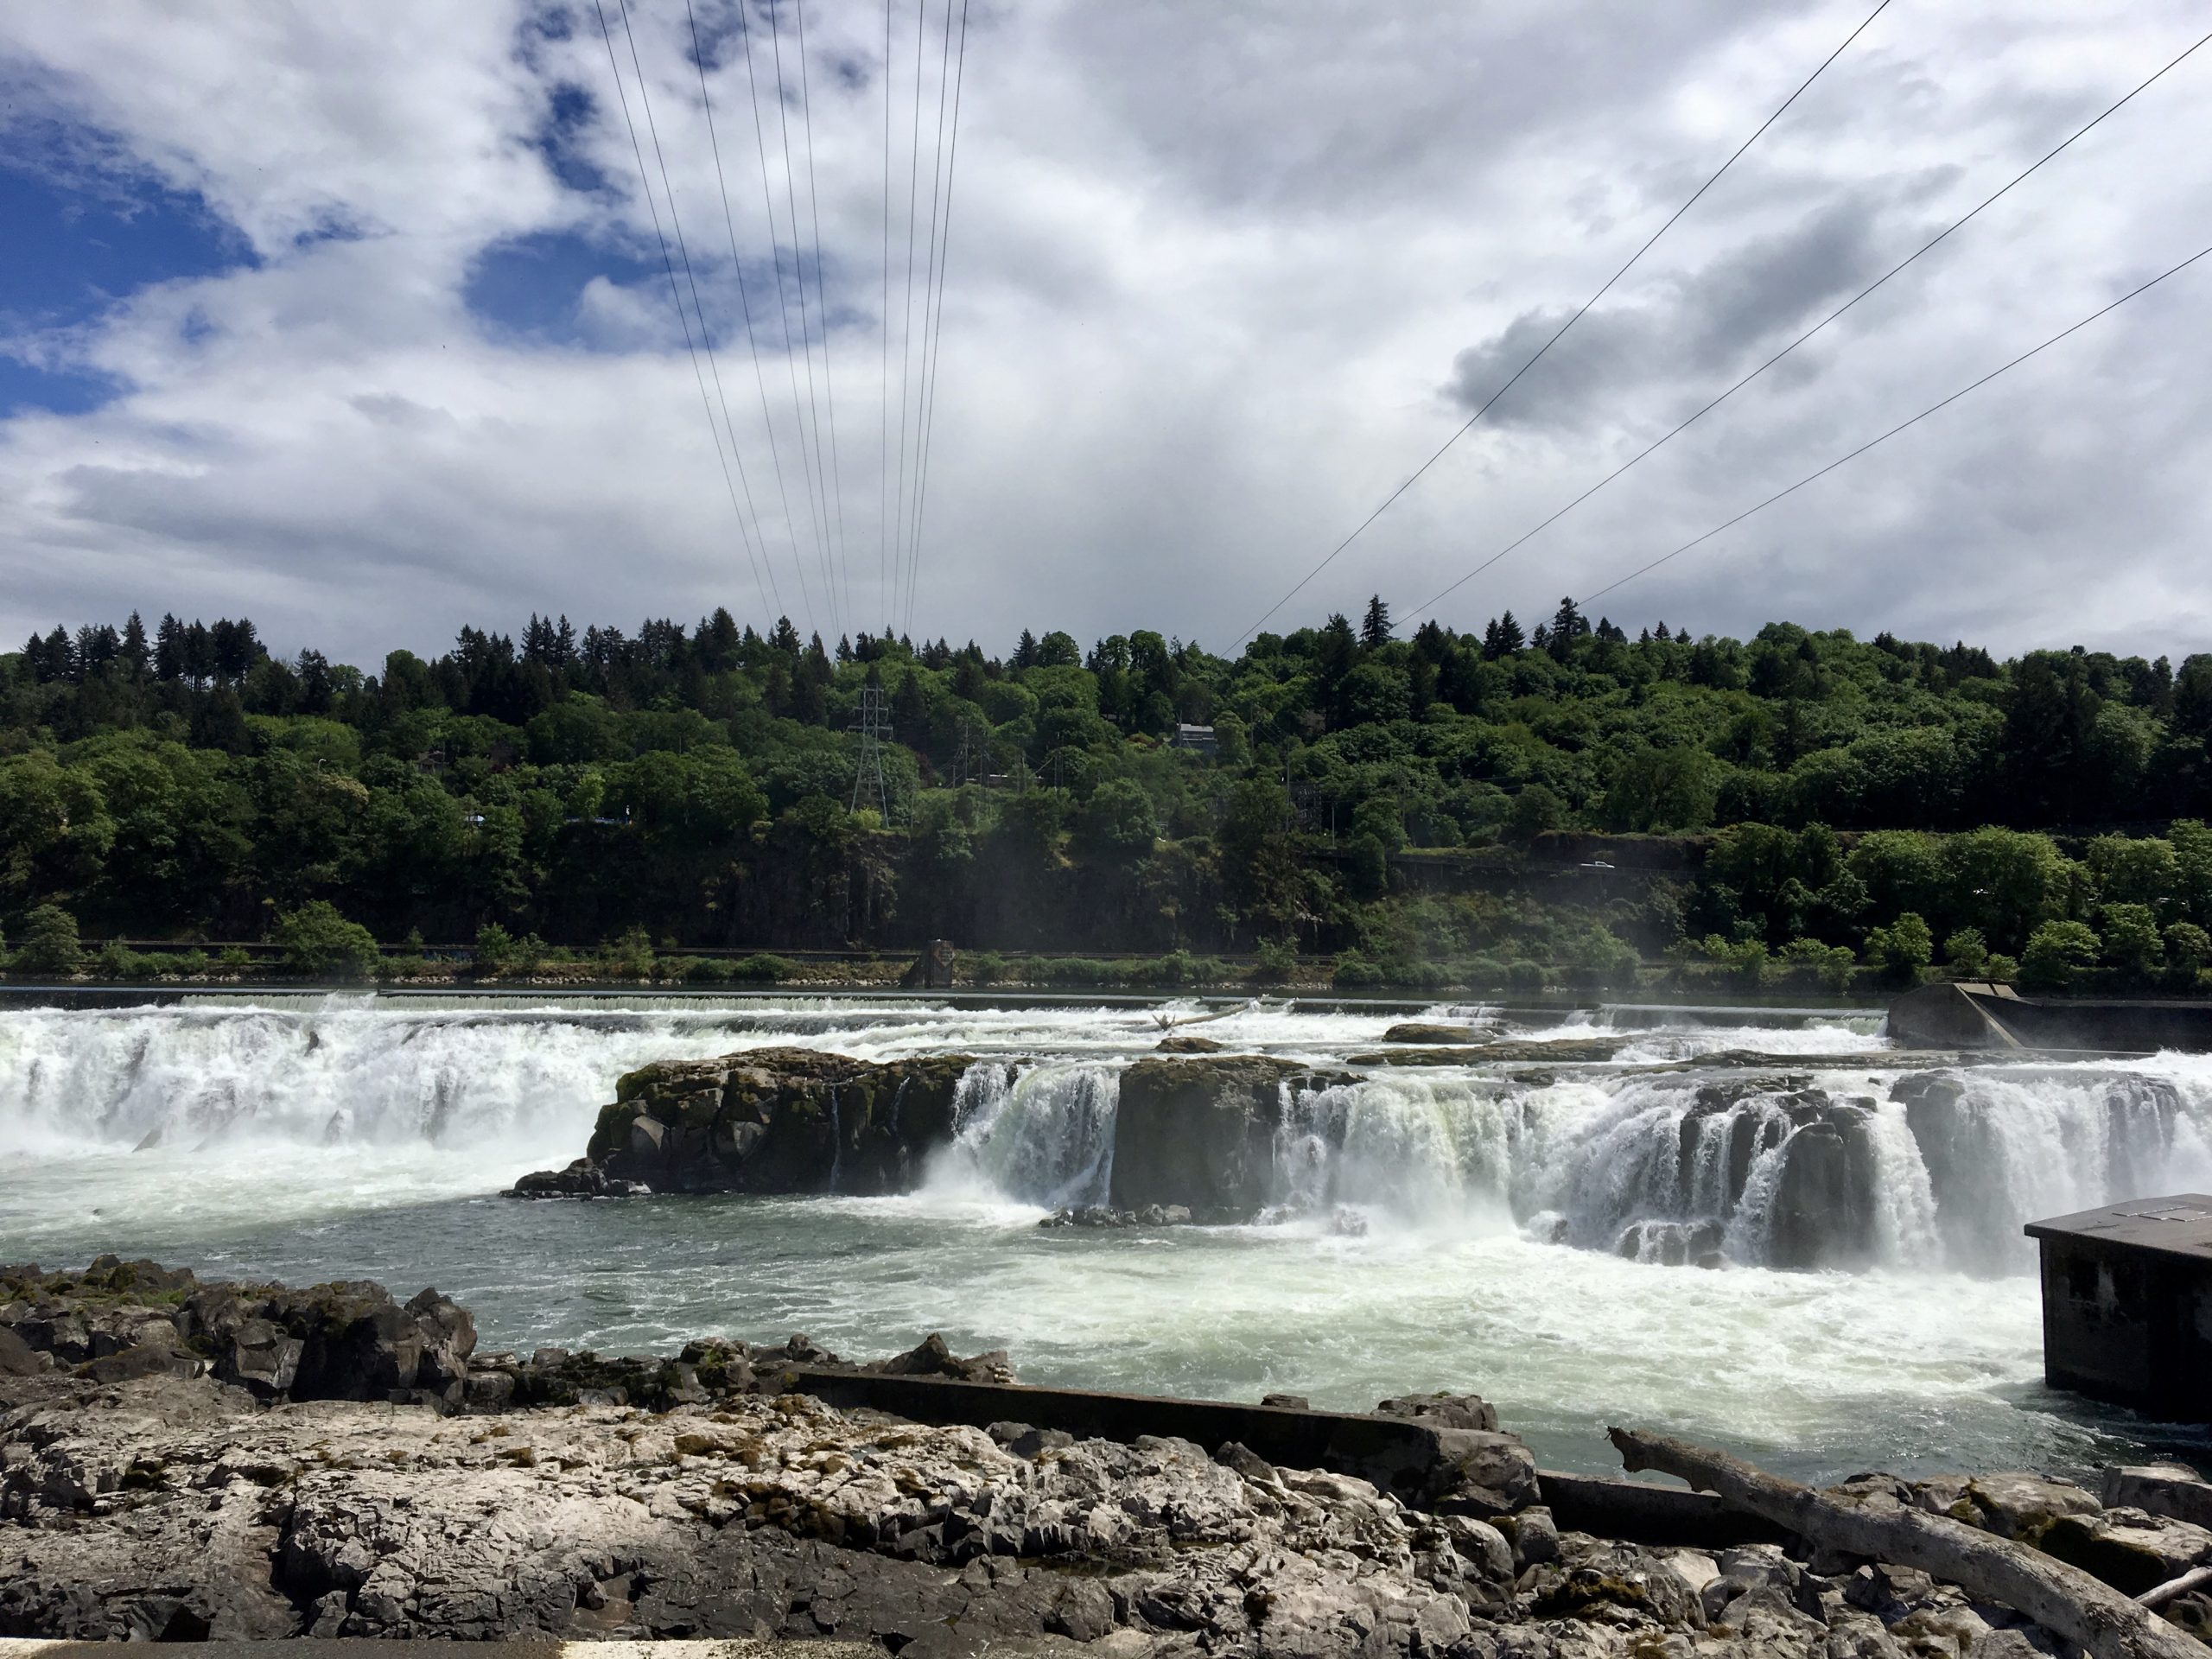 LIHI Certificate #33 – Willamette Falls Hydroelectric Project, Oregon